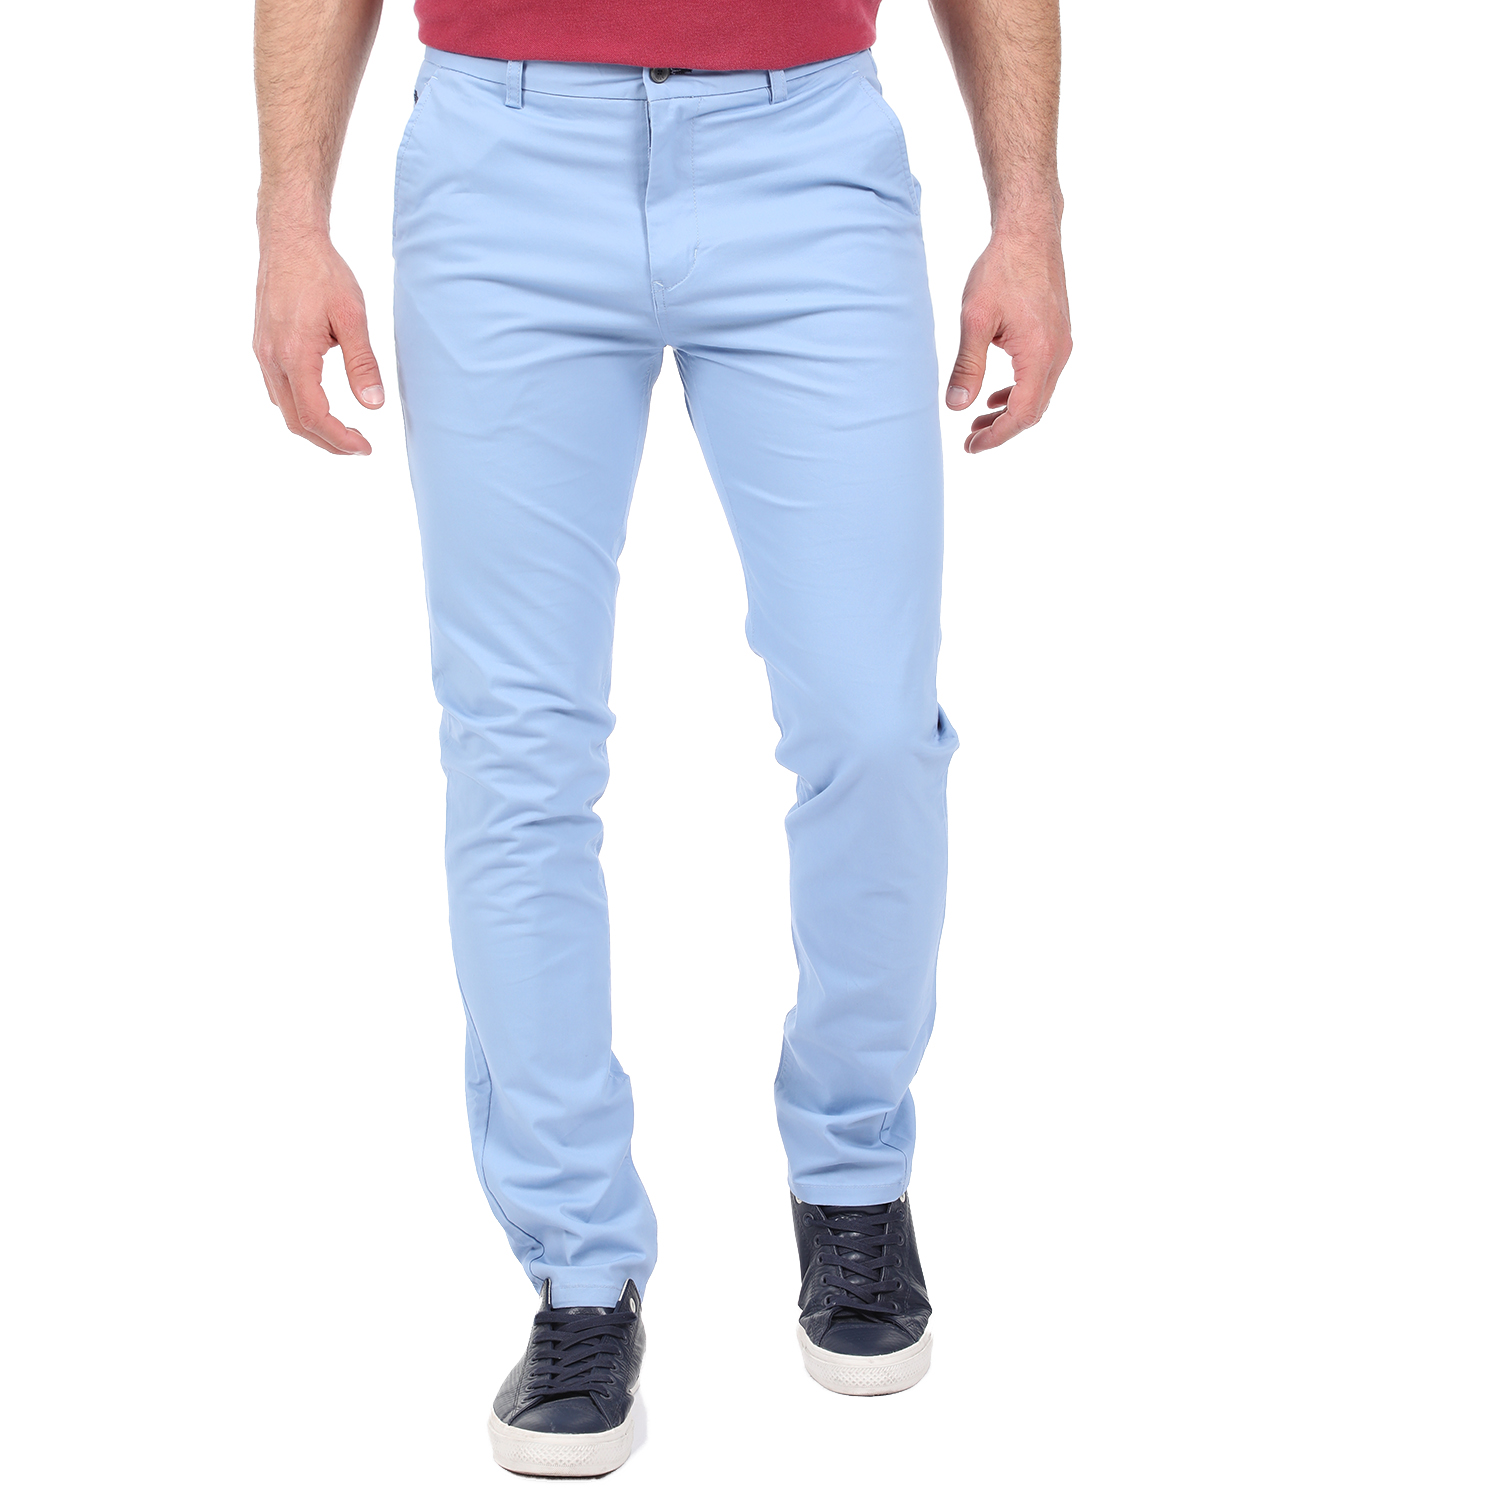 Ανδρικά/Ρούχα/Παντελόνια/Chinos DORS - Ανδρικό chino παντελόνι DORS γαλάζιο